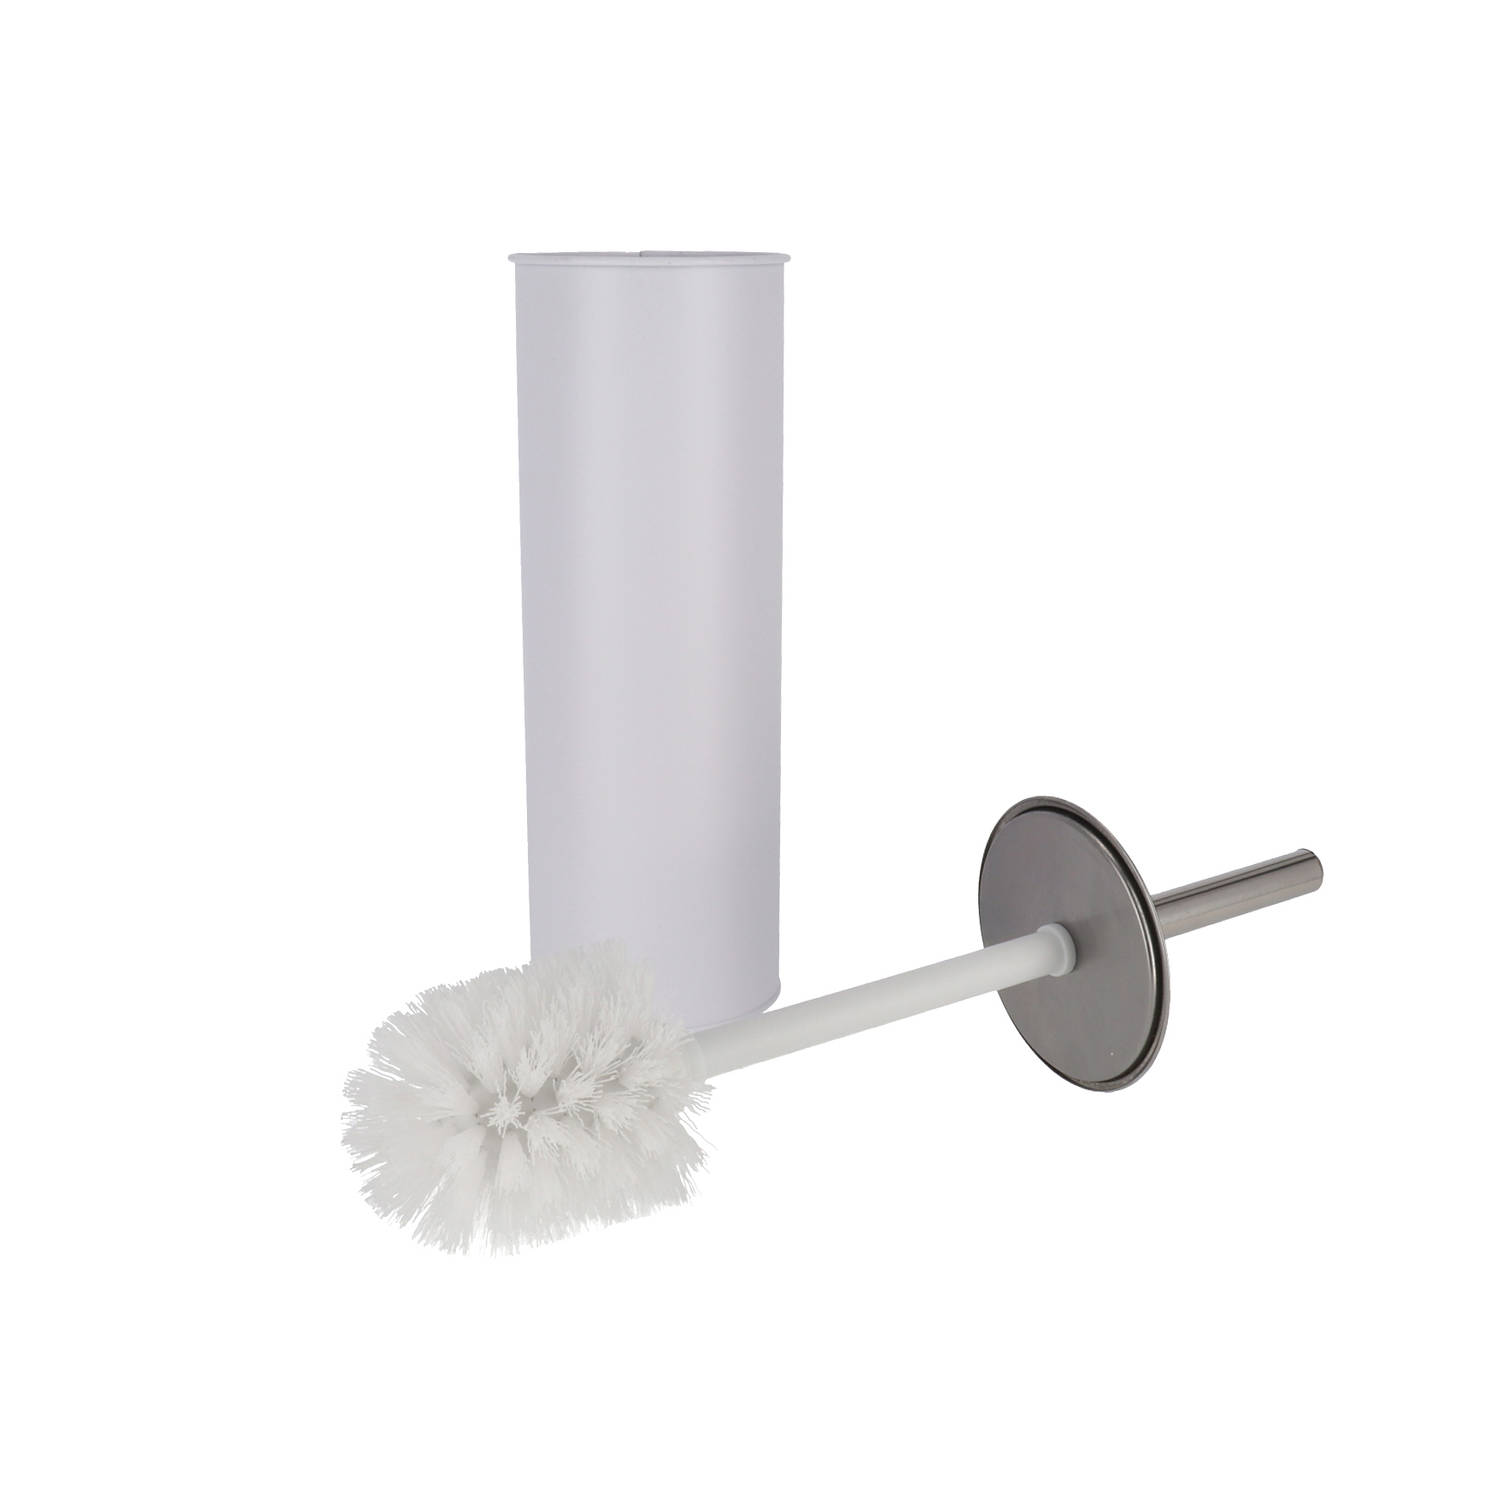 Gebor - Praktische Toiletborstelhouder Met Borstel 9,5x38cm Staal/wit 2-delig - Toilet - Badkamer - Hygiene - Wc